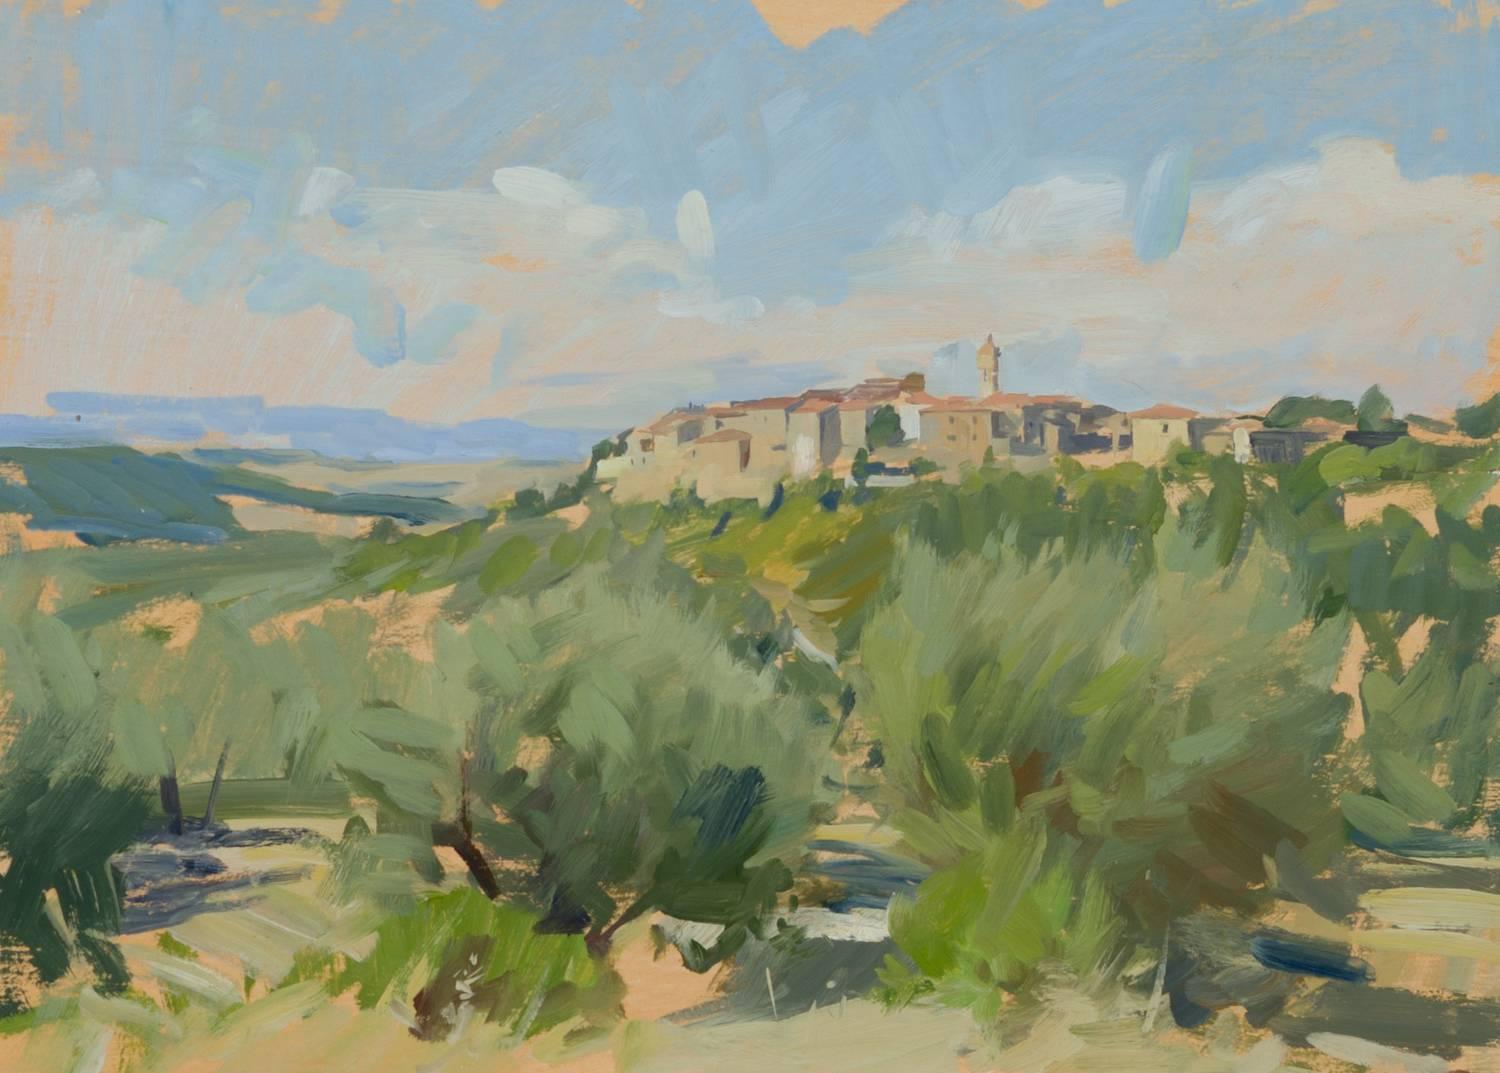 Marc Dalessio Landscape Painting – "Castelmuzio" zeitgenössische impressionistische Pleinairmalerei, kleine Ölstudie